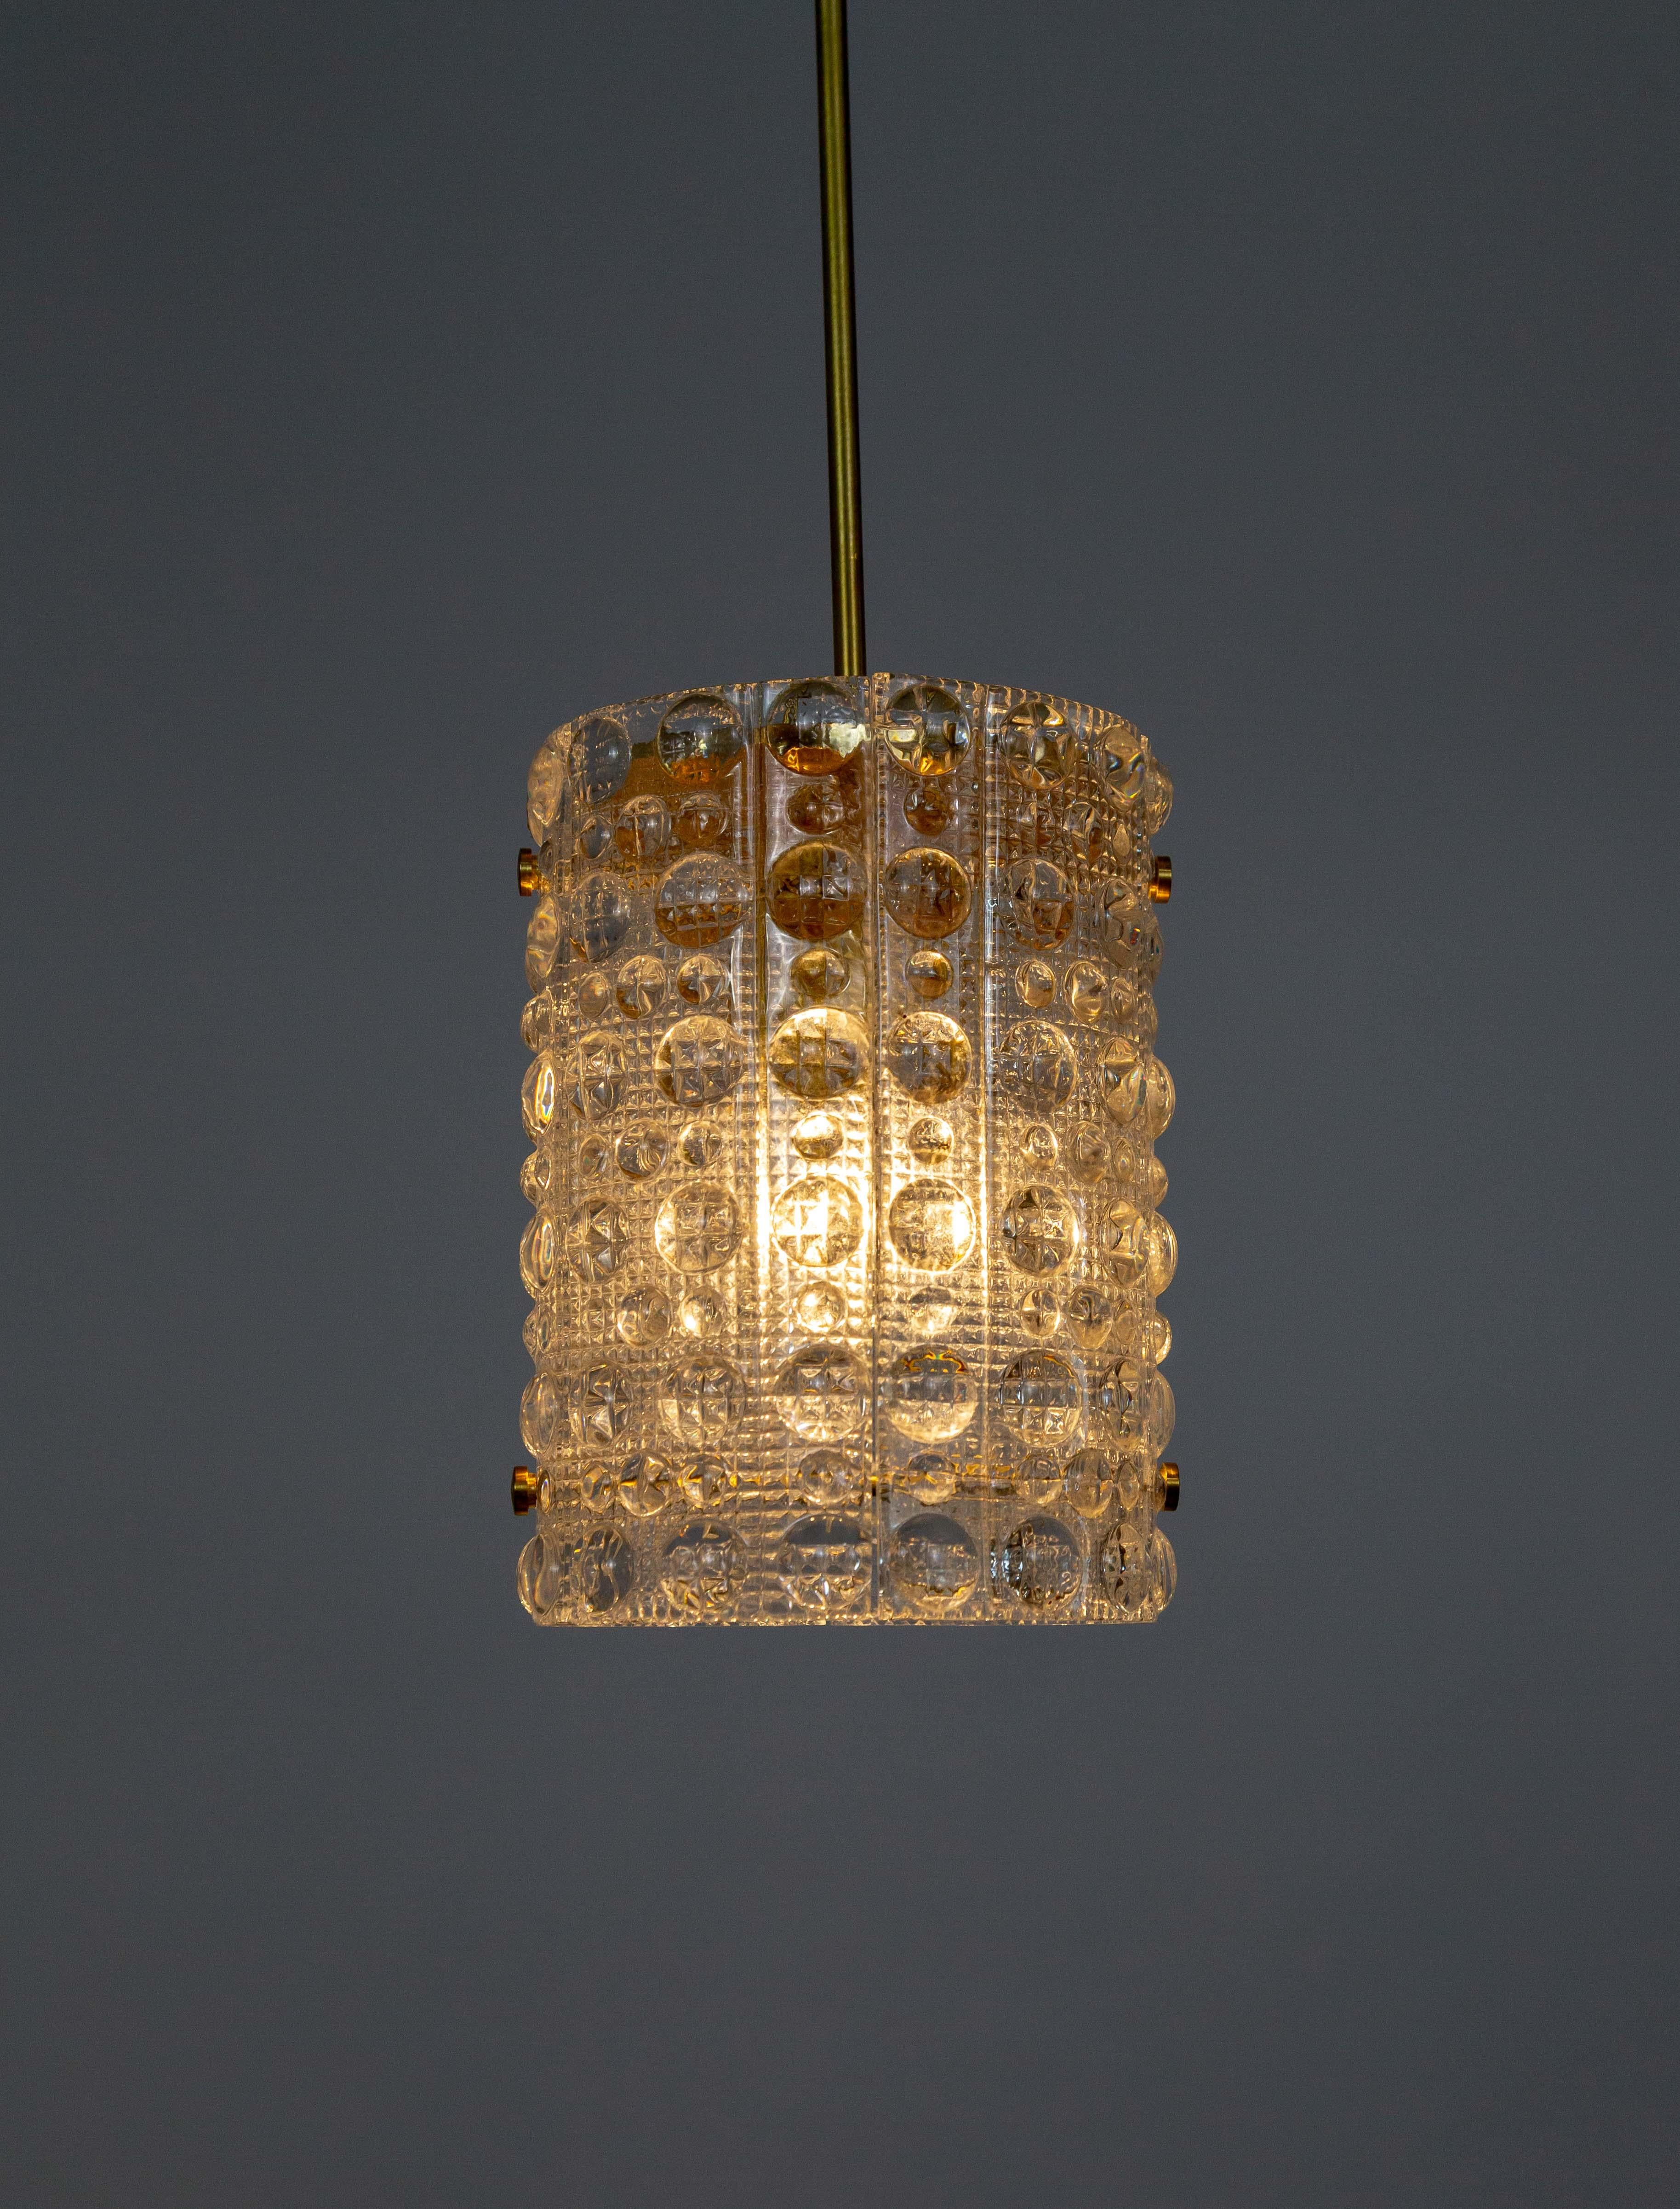 Une lampe suspendue d'Orrefors par Carl Fagerlund dans son style Vénus, de forme cylindrique, en verre de cristal moulé. Il est doté d'une longue et étroite tige en laiton et d'un diffuseur supérieur en laiton brut filé. Les deux parties en verre